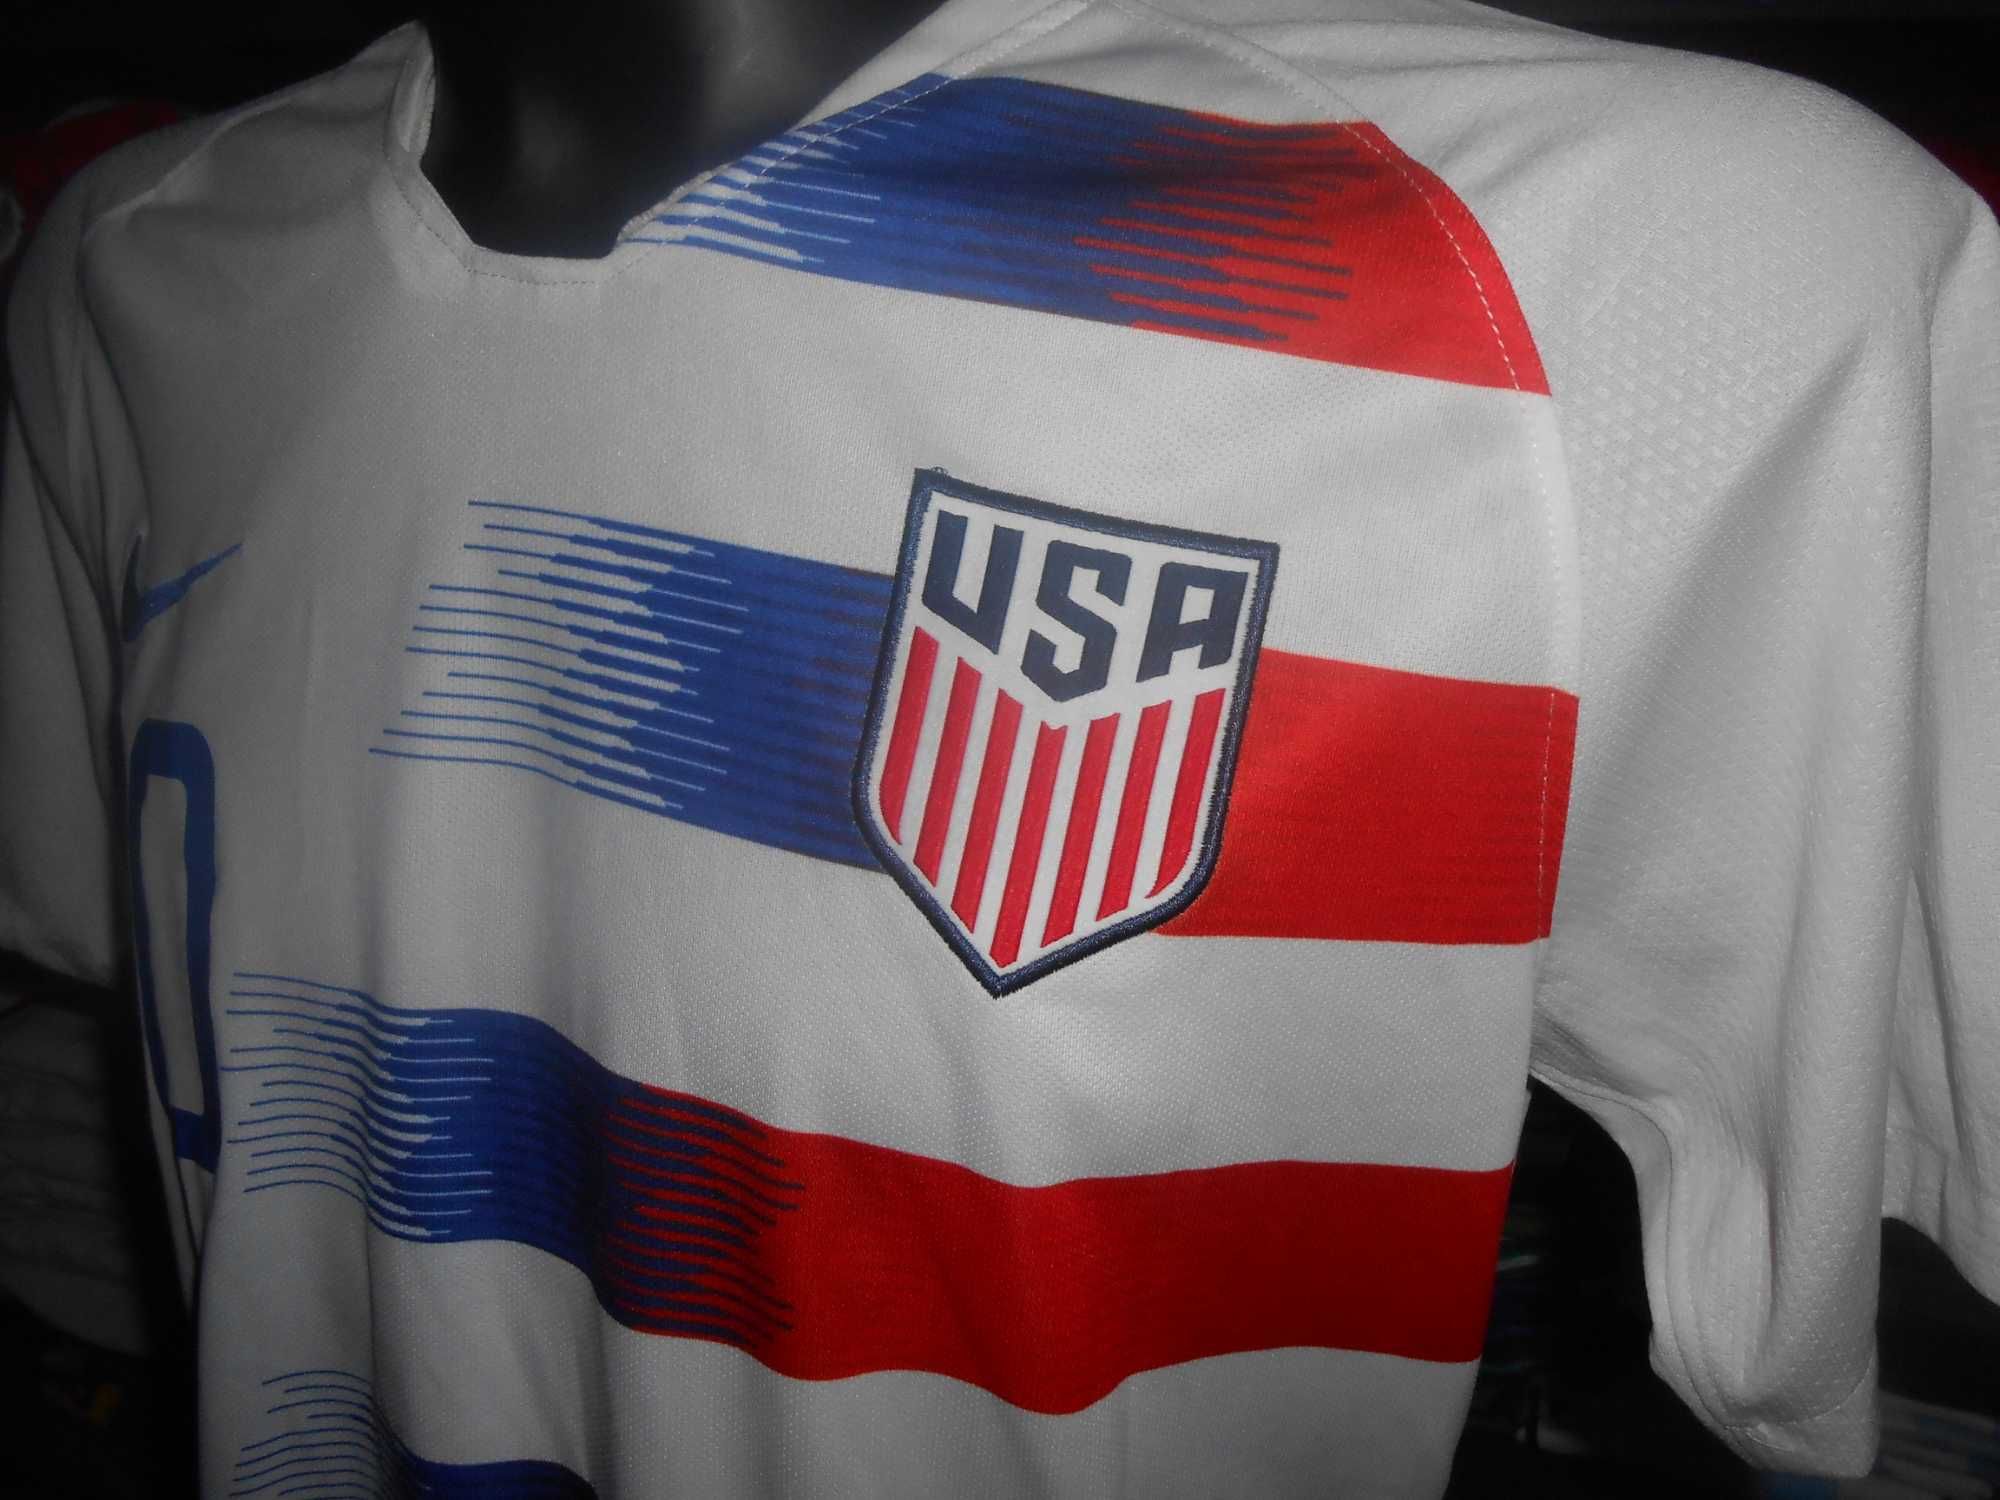 tricou USA national team pulisic #10 nike 2018 2020 marimea L